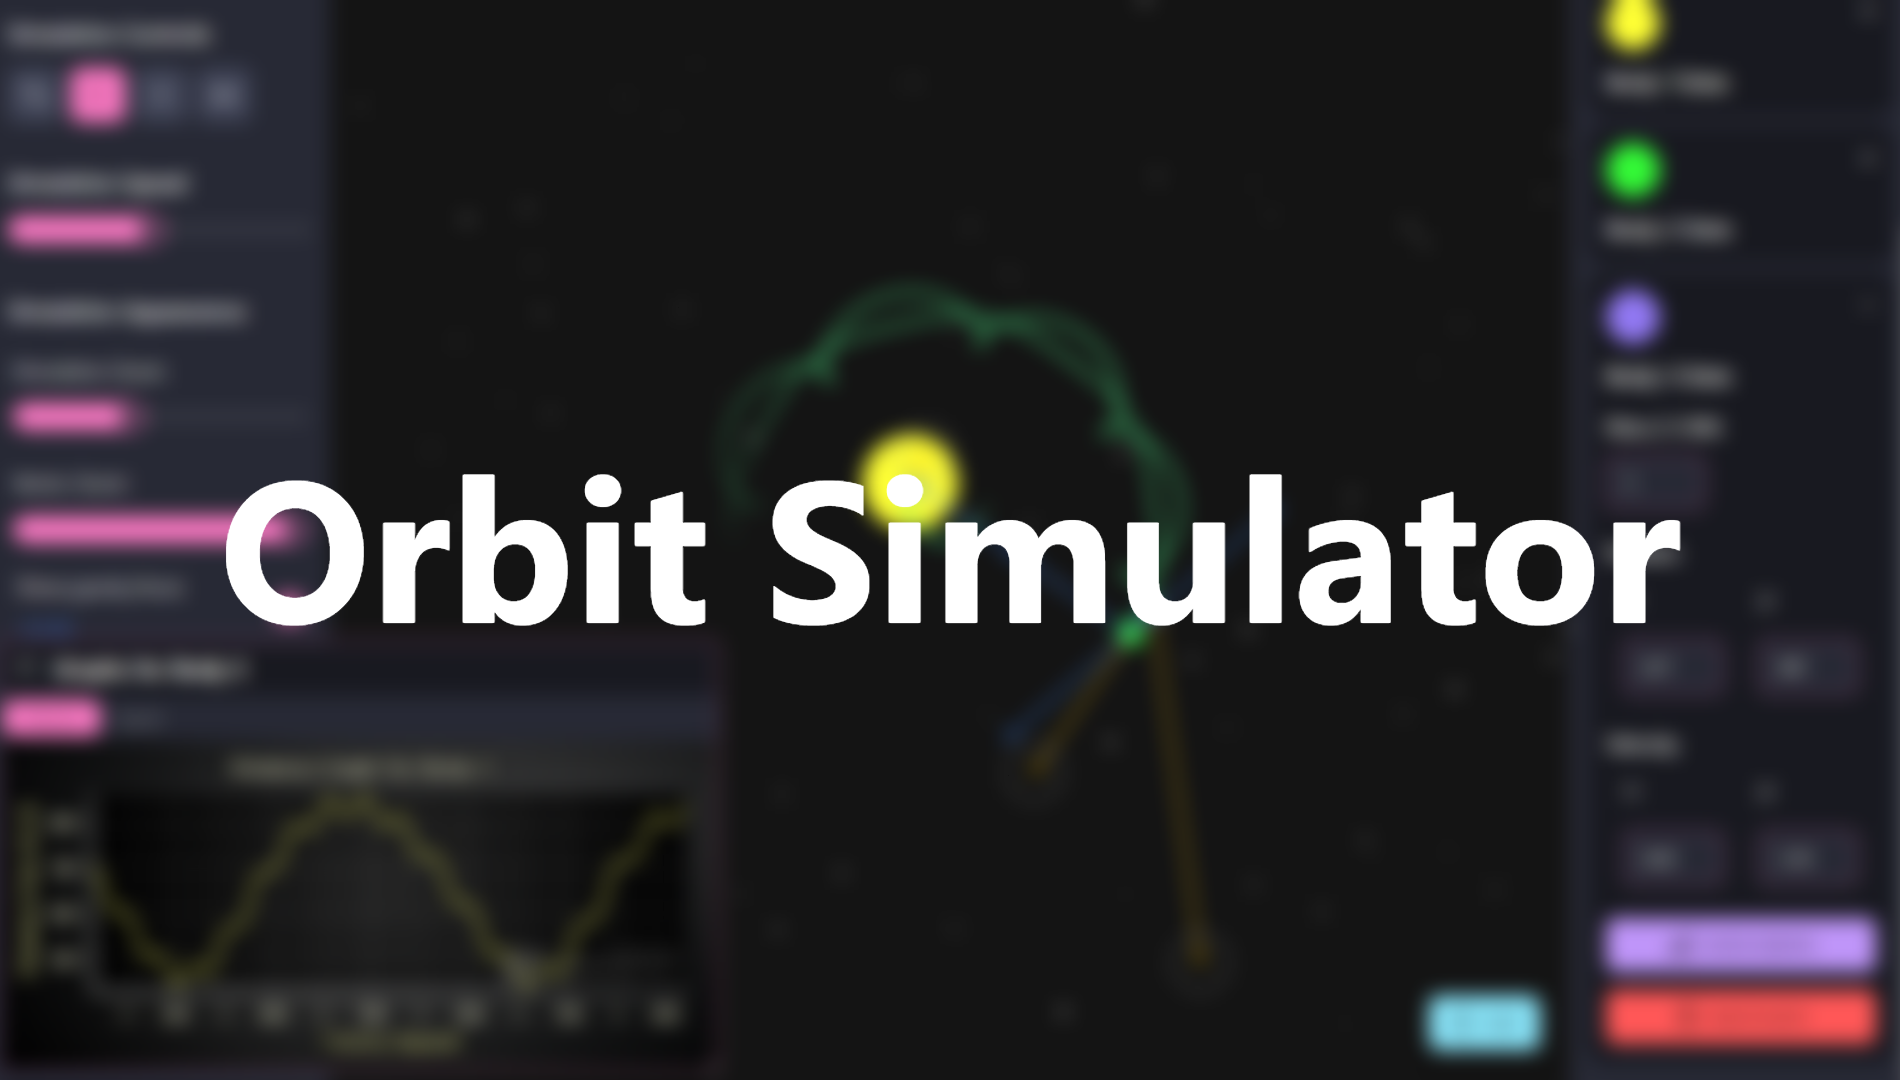 Orbit Simulator